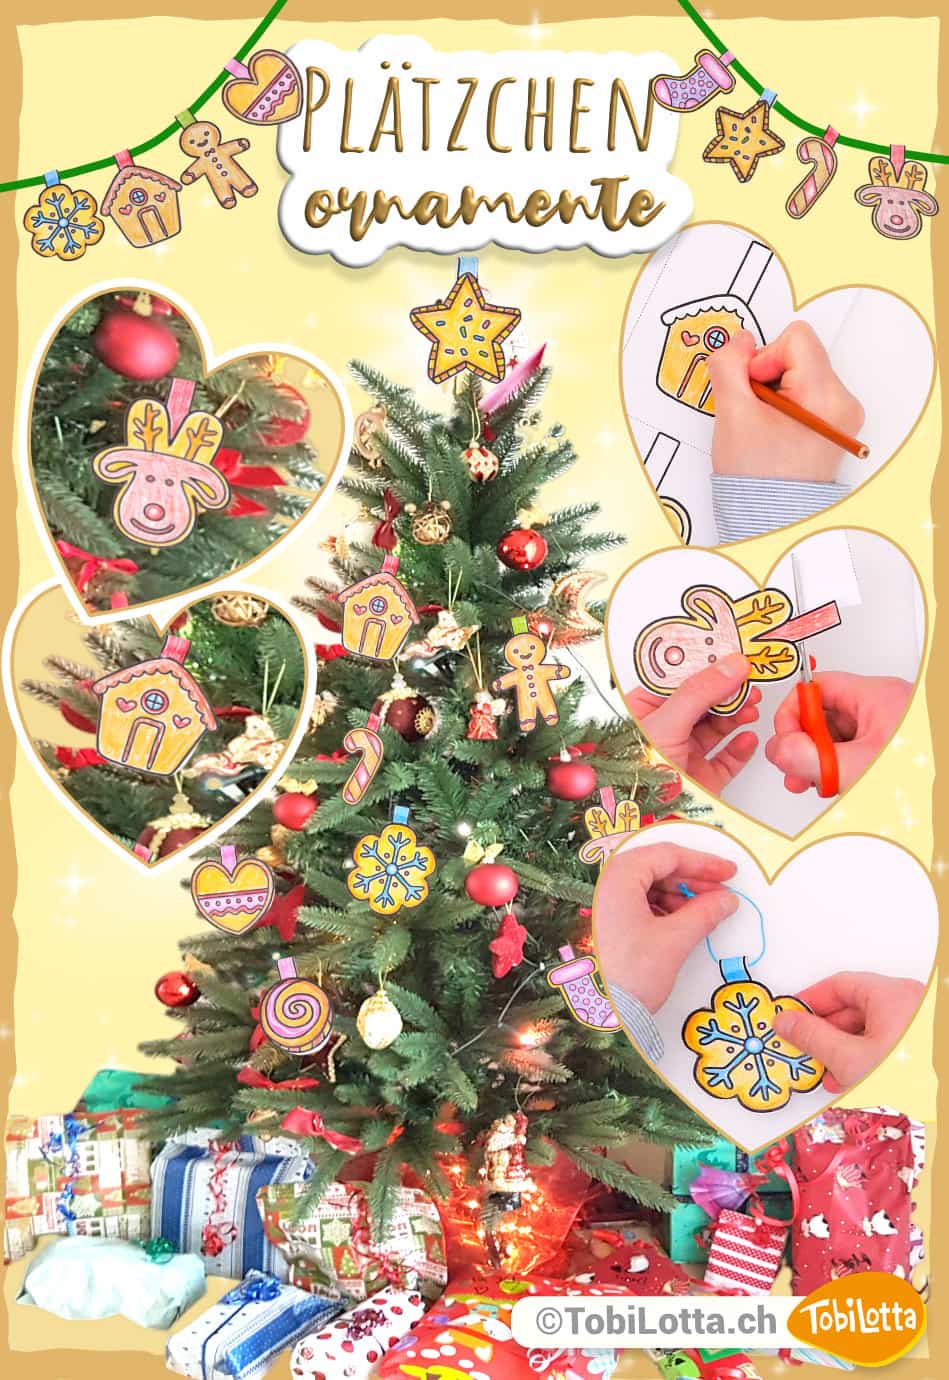 Weihnachtsbaum-Plaetzchen-Ornamente_-Weihnachten-Advent-Bastelvorlage-fuer-das-basteln-mit-kindern-zum-ausdrucken-pdf-vorlagen-eduki-advent-diy-geschenke-basteln-kekse